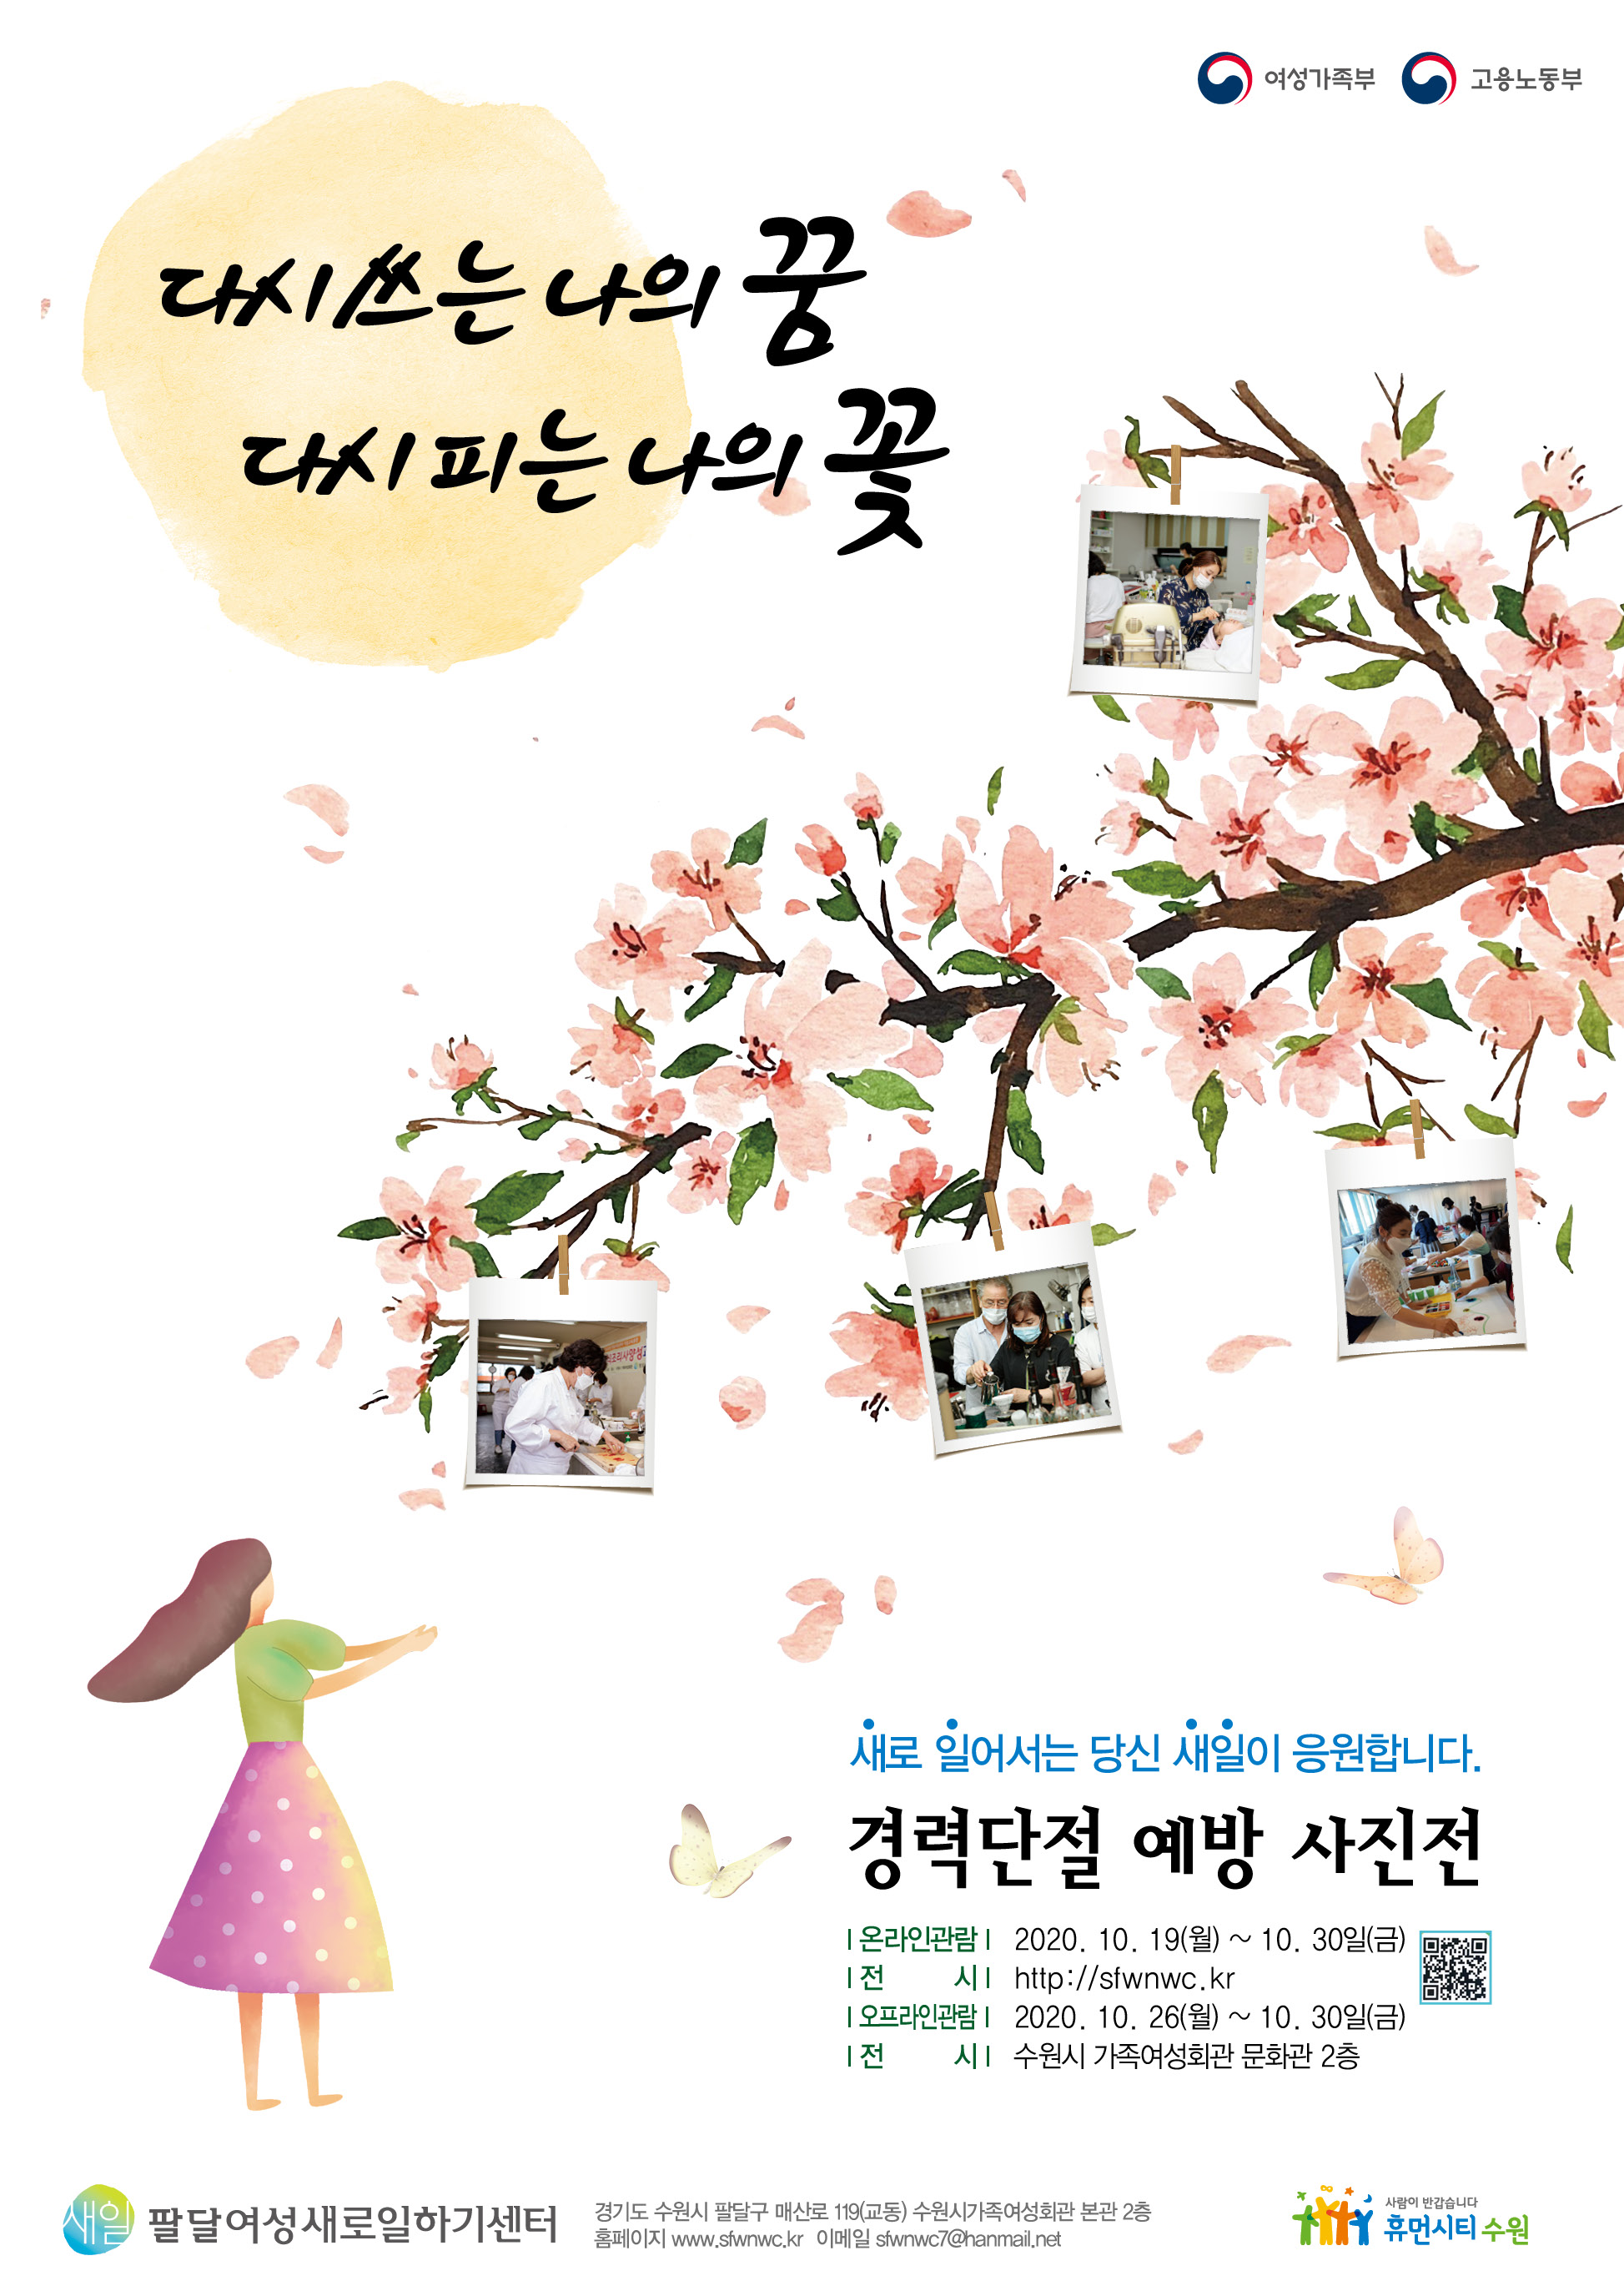 수원 팔달여성새로일하기센터, 경력단절 예방 사진전 개최